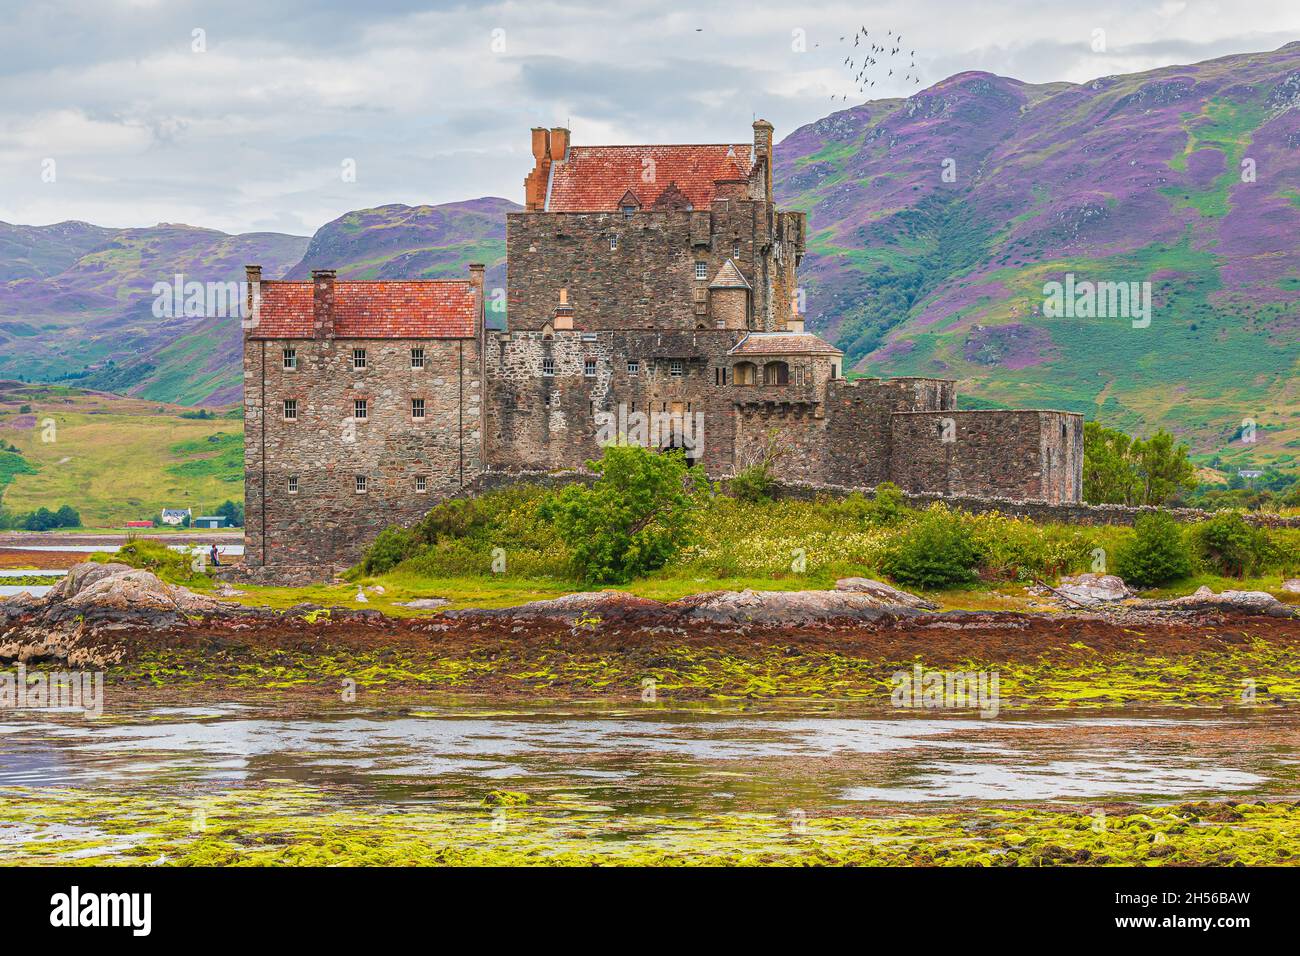 Château d'Eilean Donan en été à marée basse.Château sur une île dans les Highlands écossais.Rochers en face du château avec des algues vertes.Montagnes col Banque D'Images